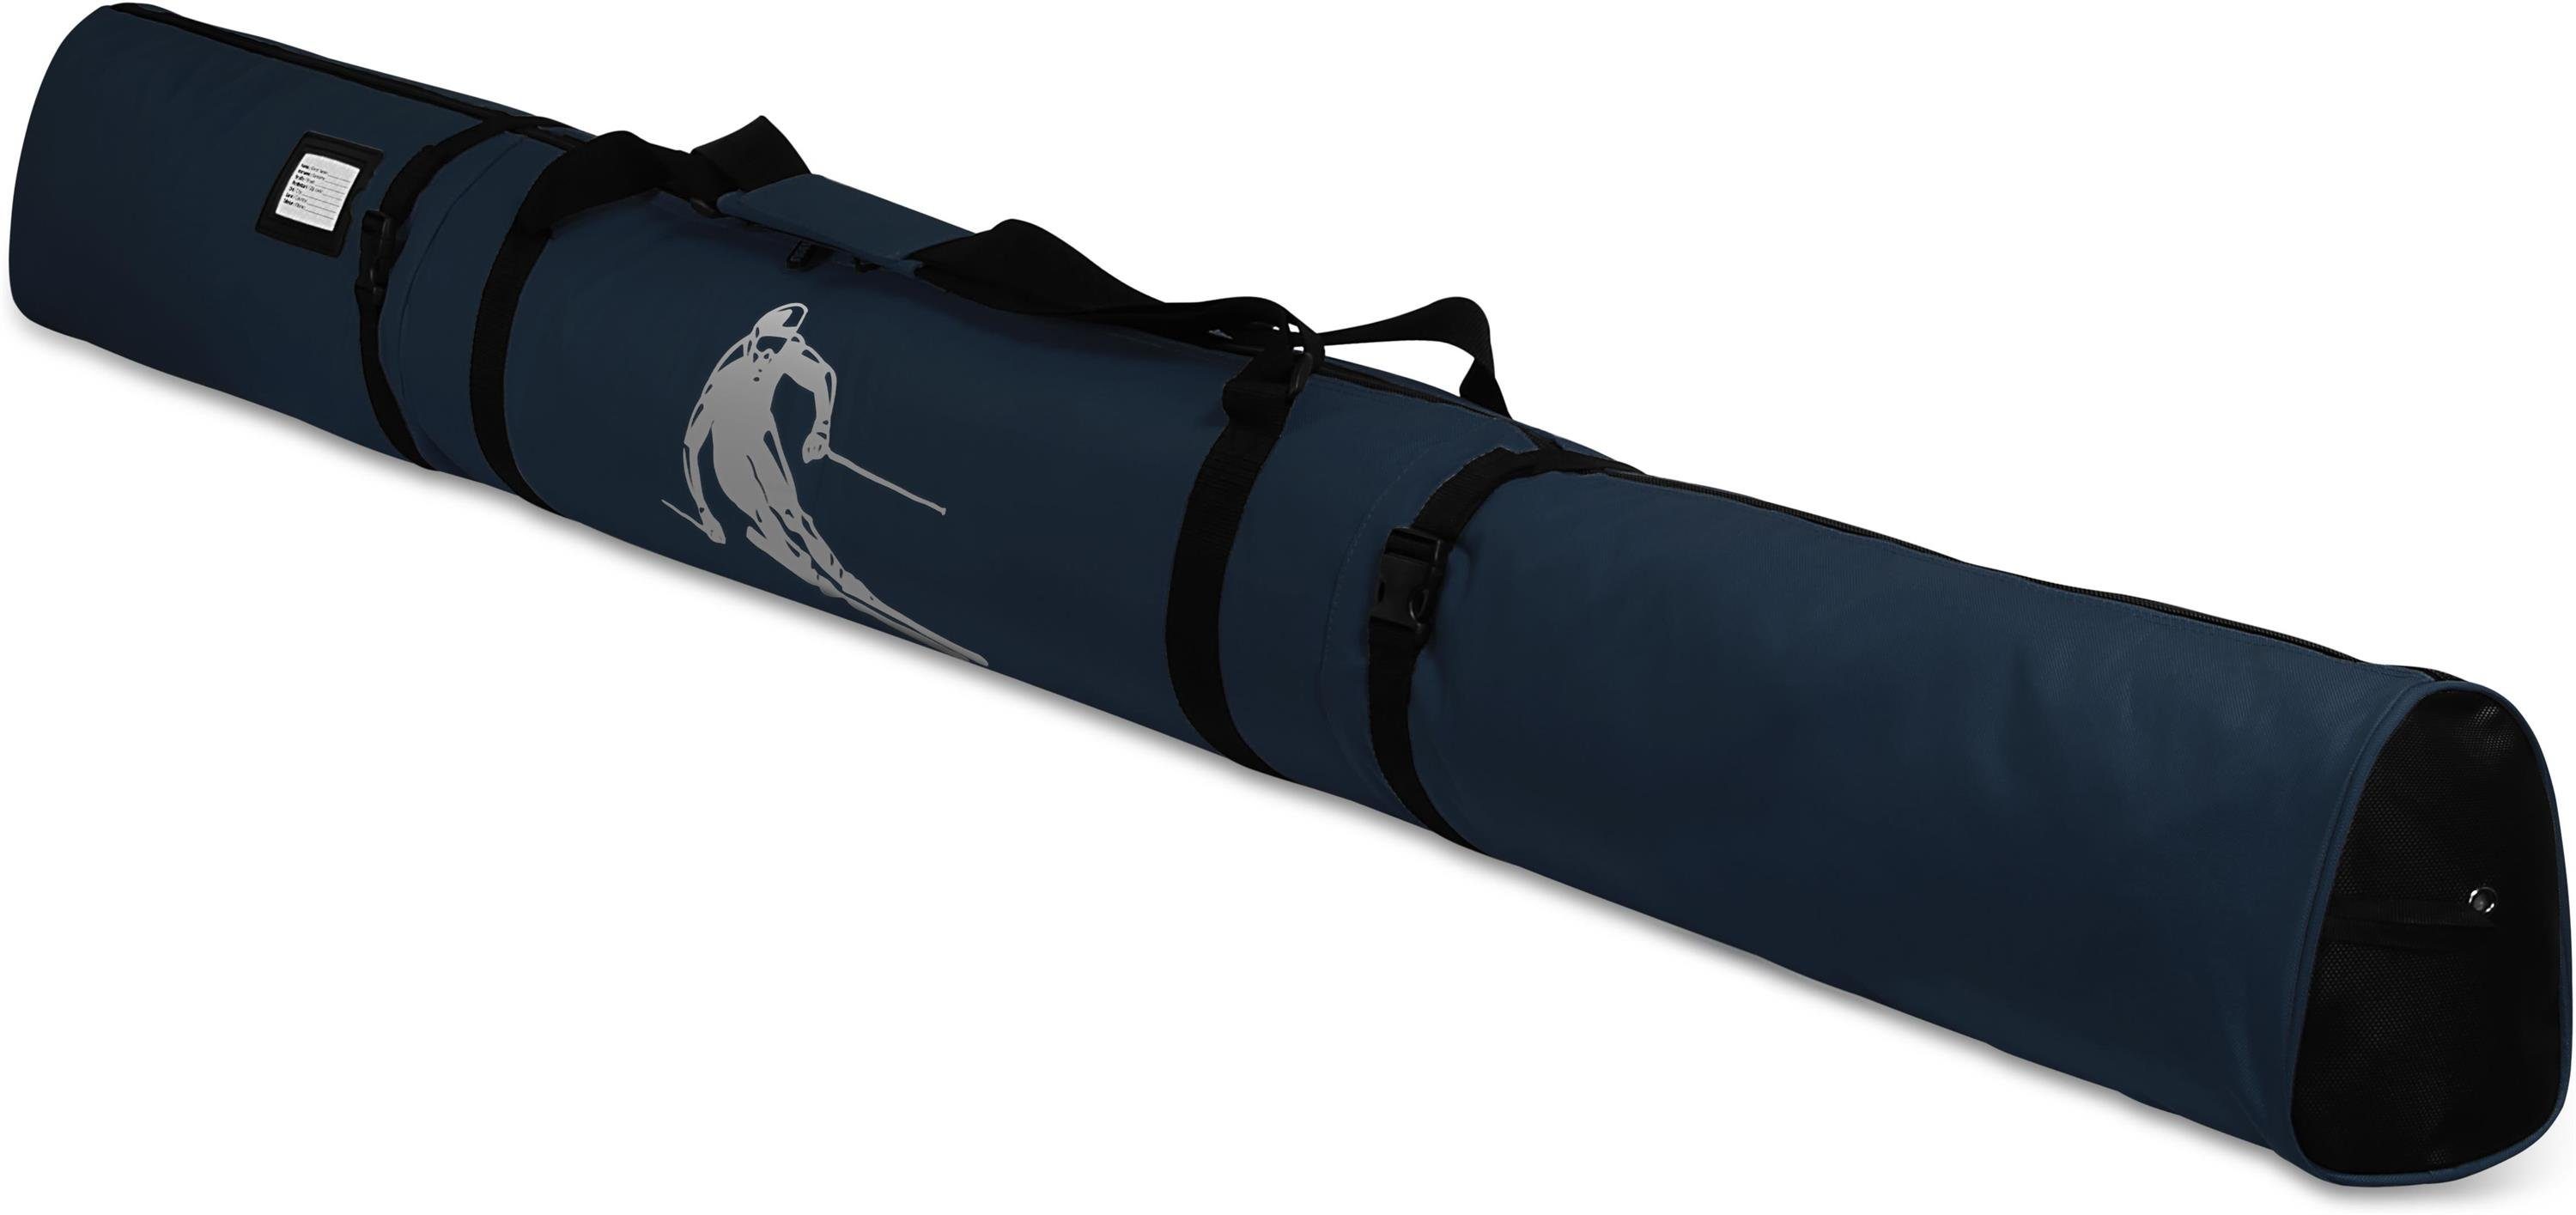 normani Sporttasche Skitasche Alpine Run 200, Skisack - Skitasche für Skier und Skistöcke Transporttasche Aufbewahrungstasche Navy